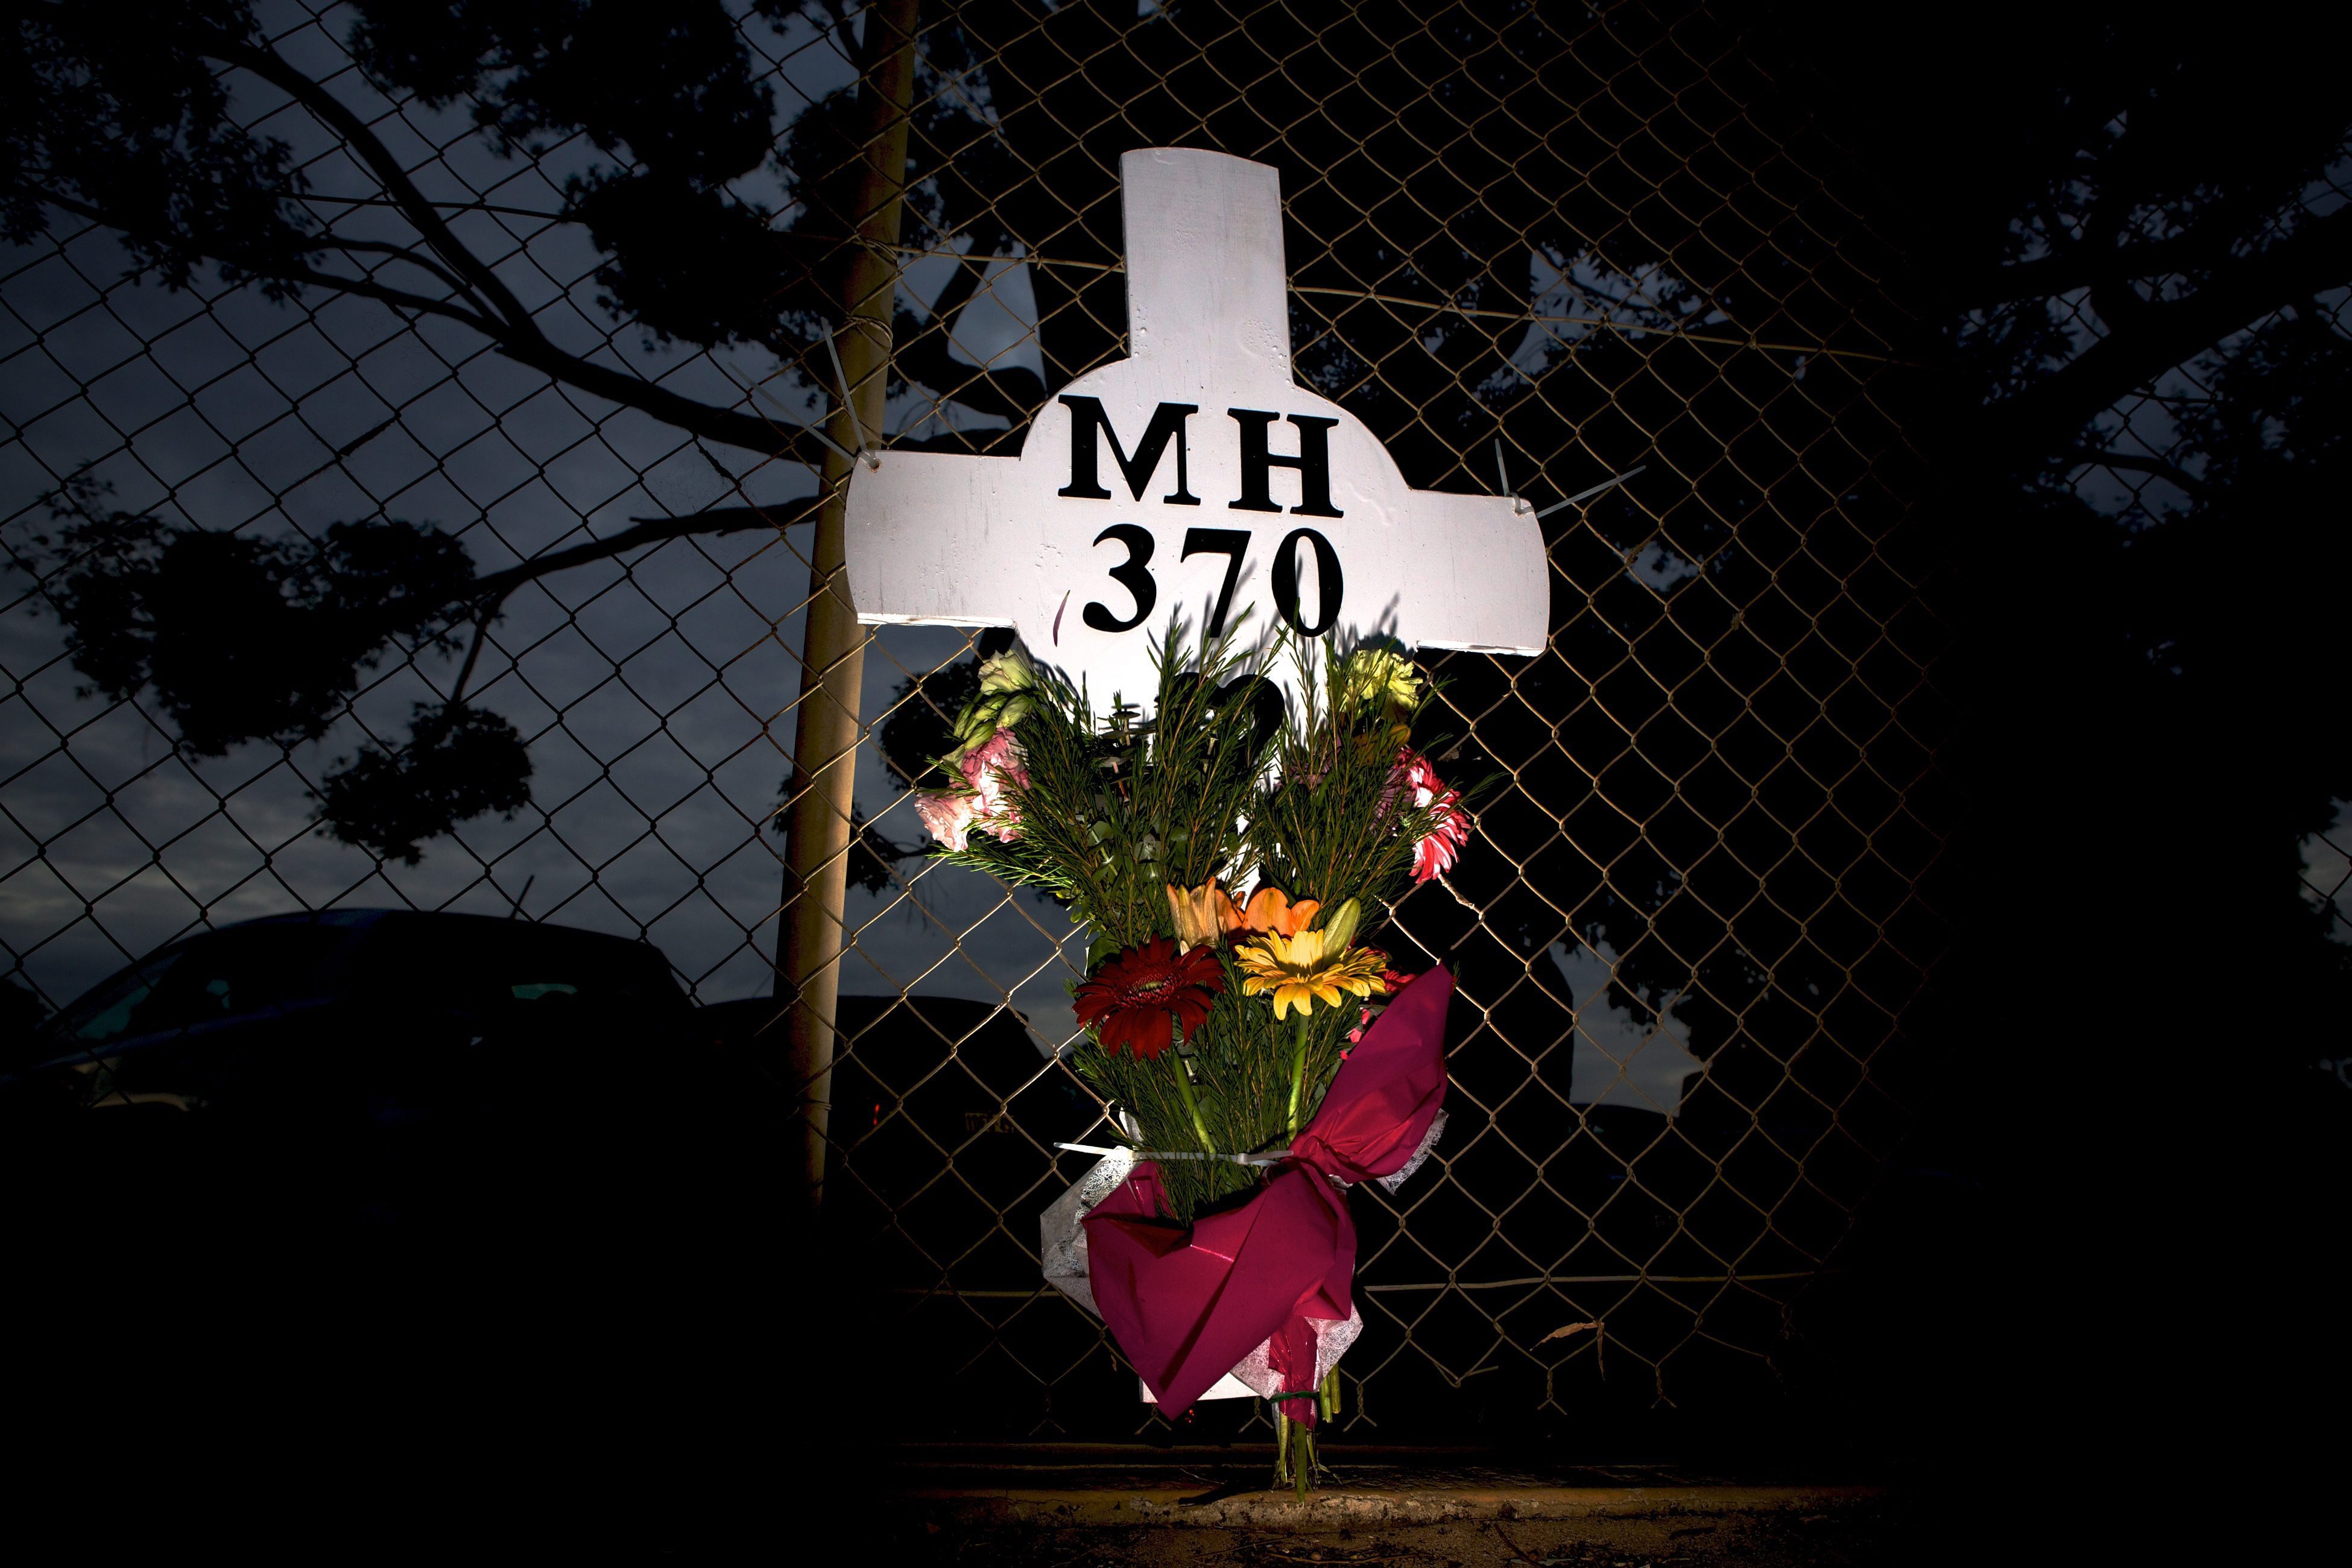 Μαλαισία: Αμοιβή σε όποιον εντοπίσει το MH370